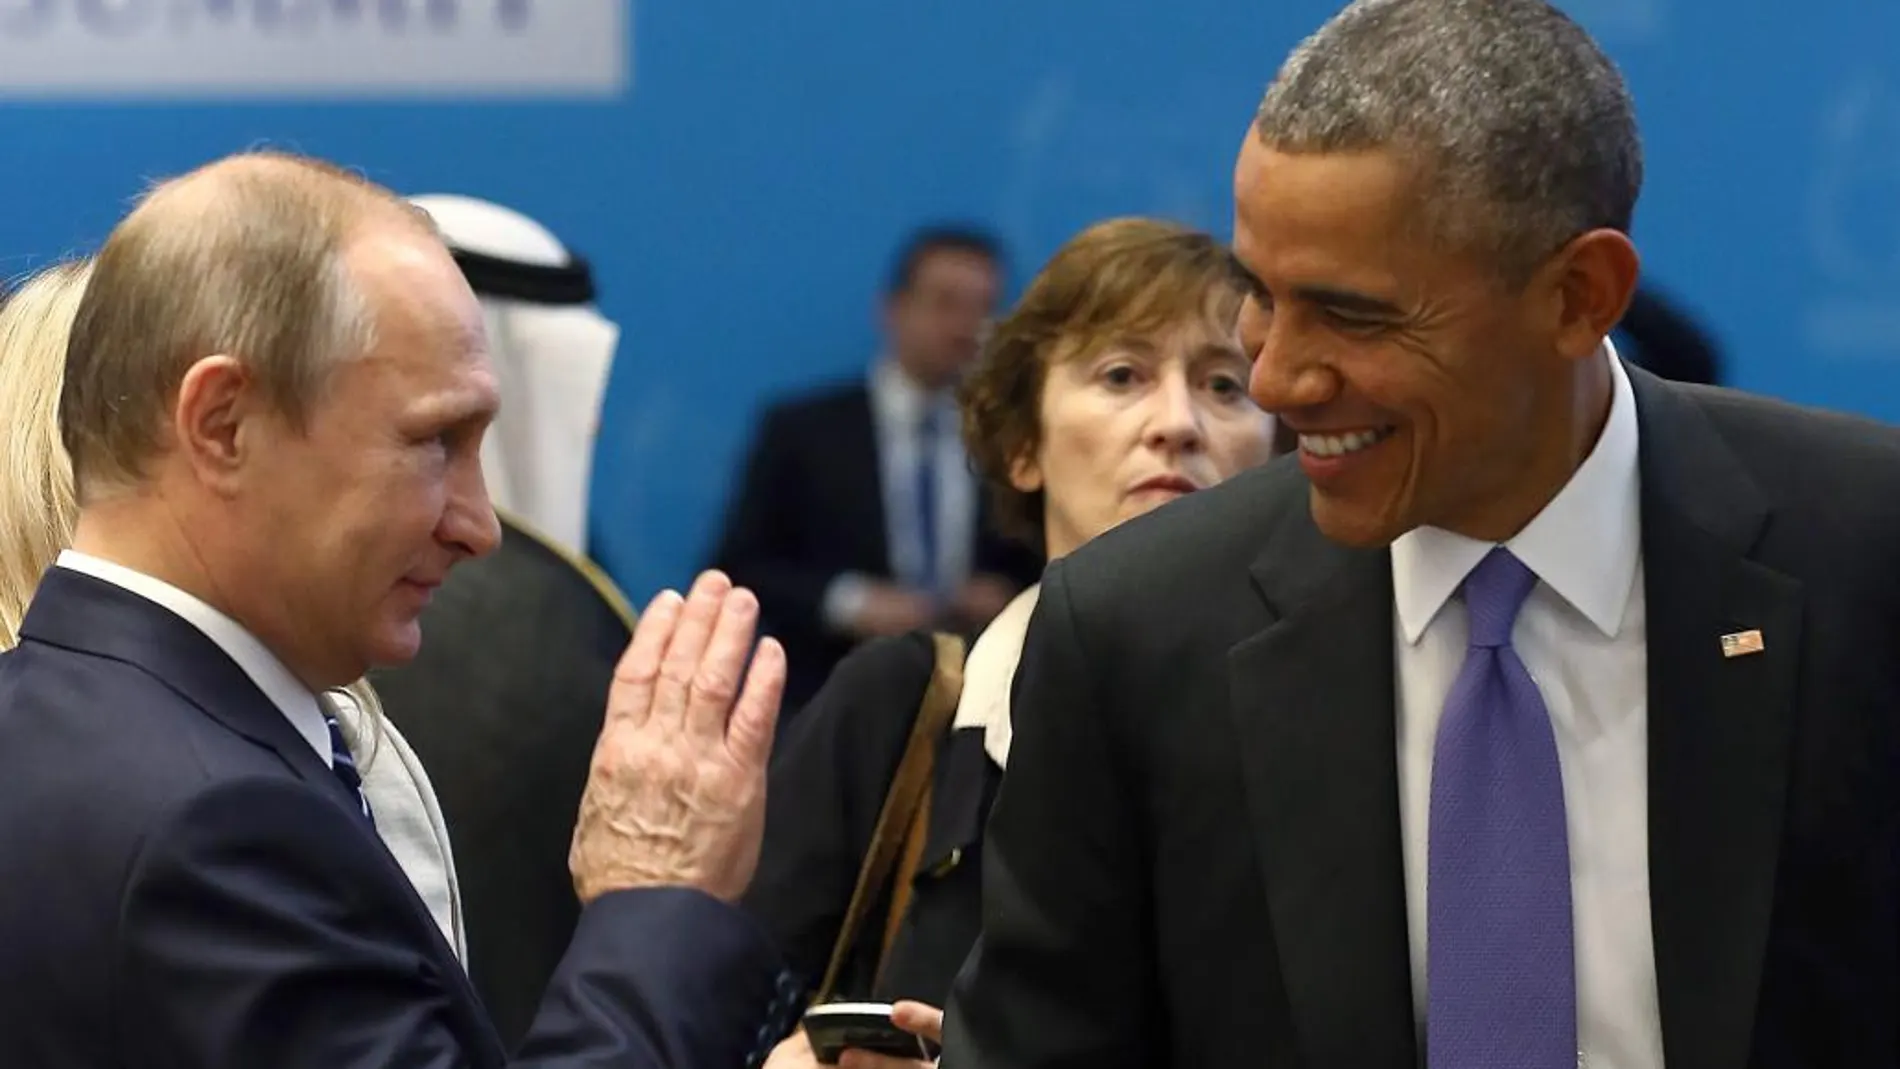 Los presidentes de REusia, Vladimir Putin (izqu.) y de Estados Unidos, Brack Obama (derch.) durante la cumbre del G20